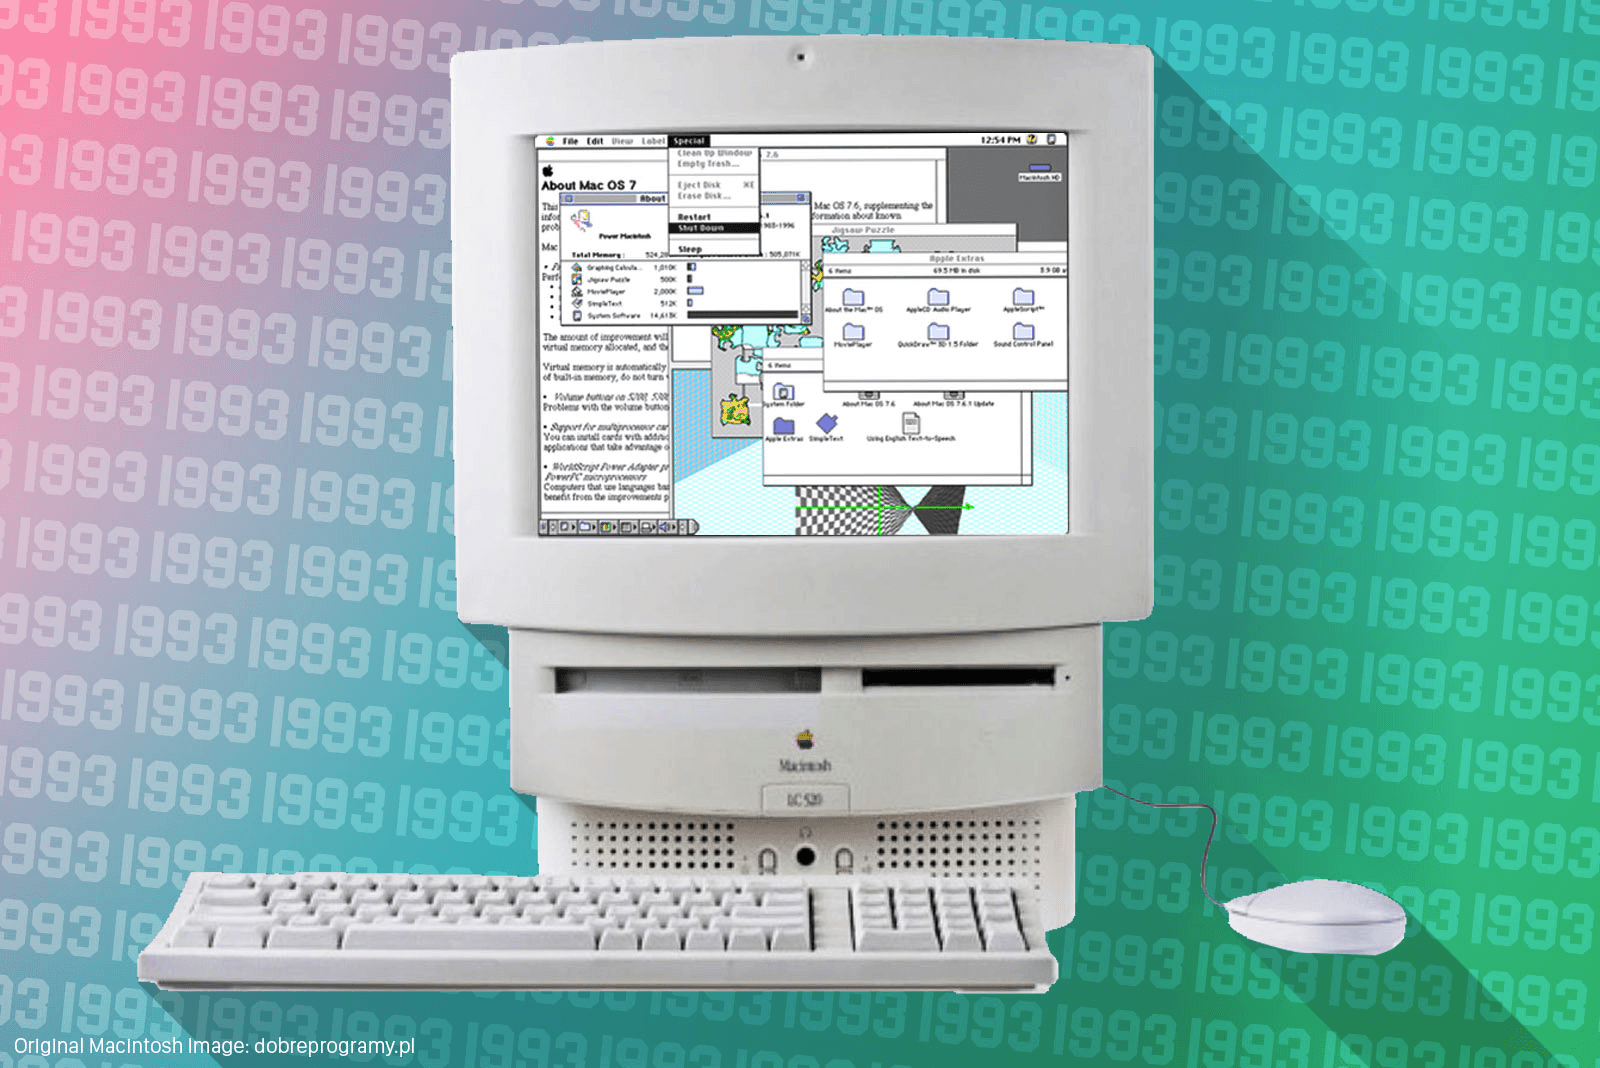 Этот день в истории Apple: выпуск Mac LC 520 нацелен на завоевание образовательного рынка